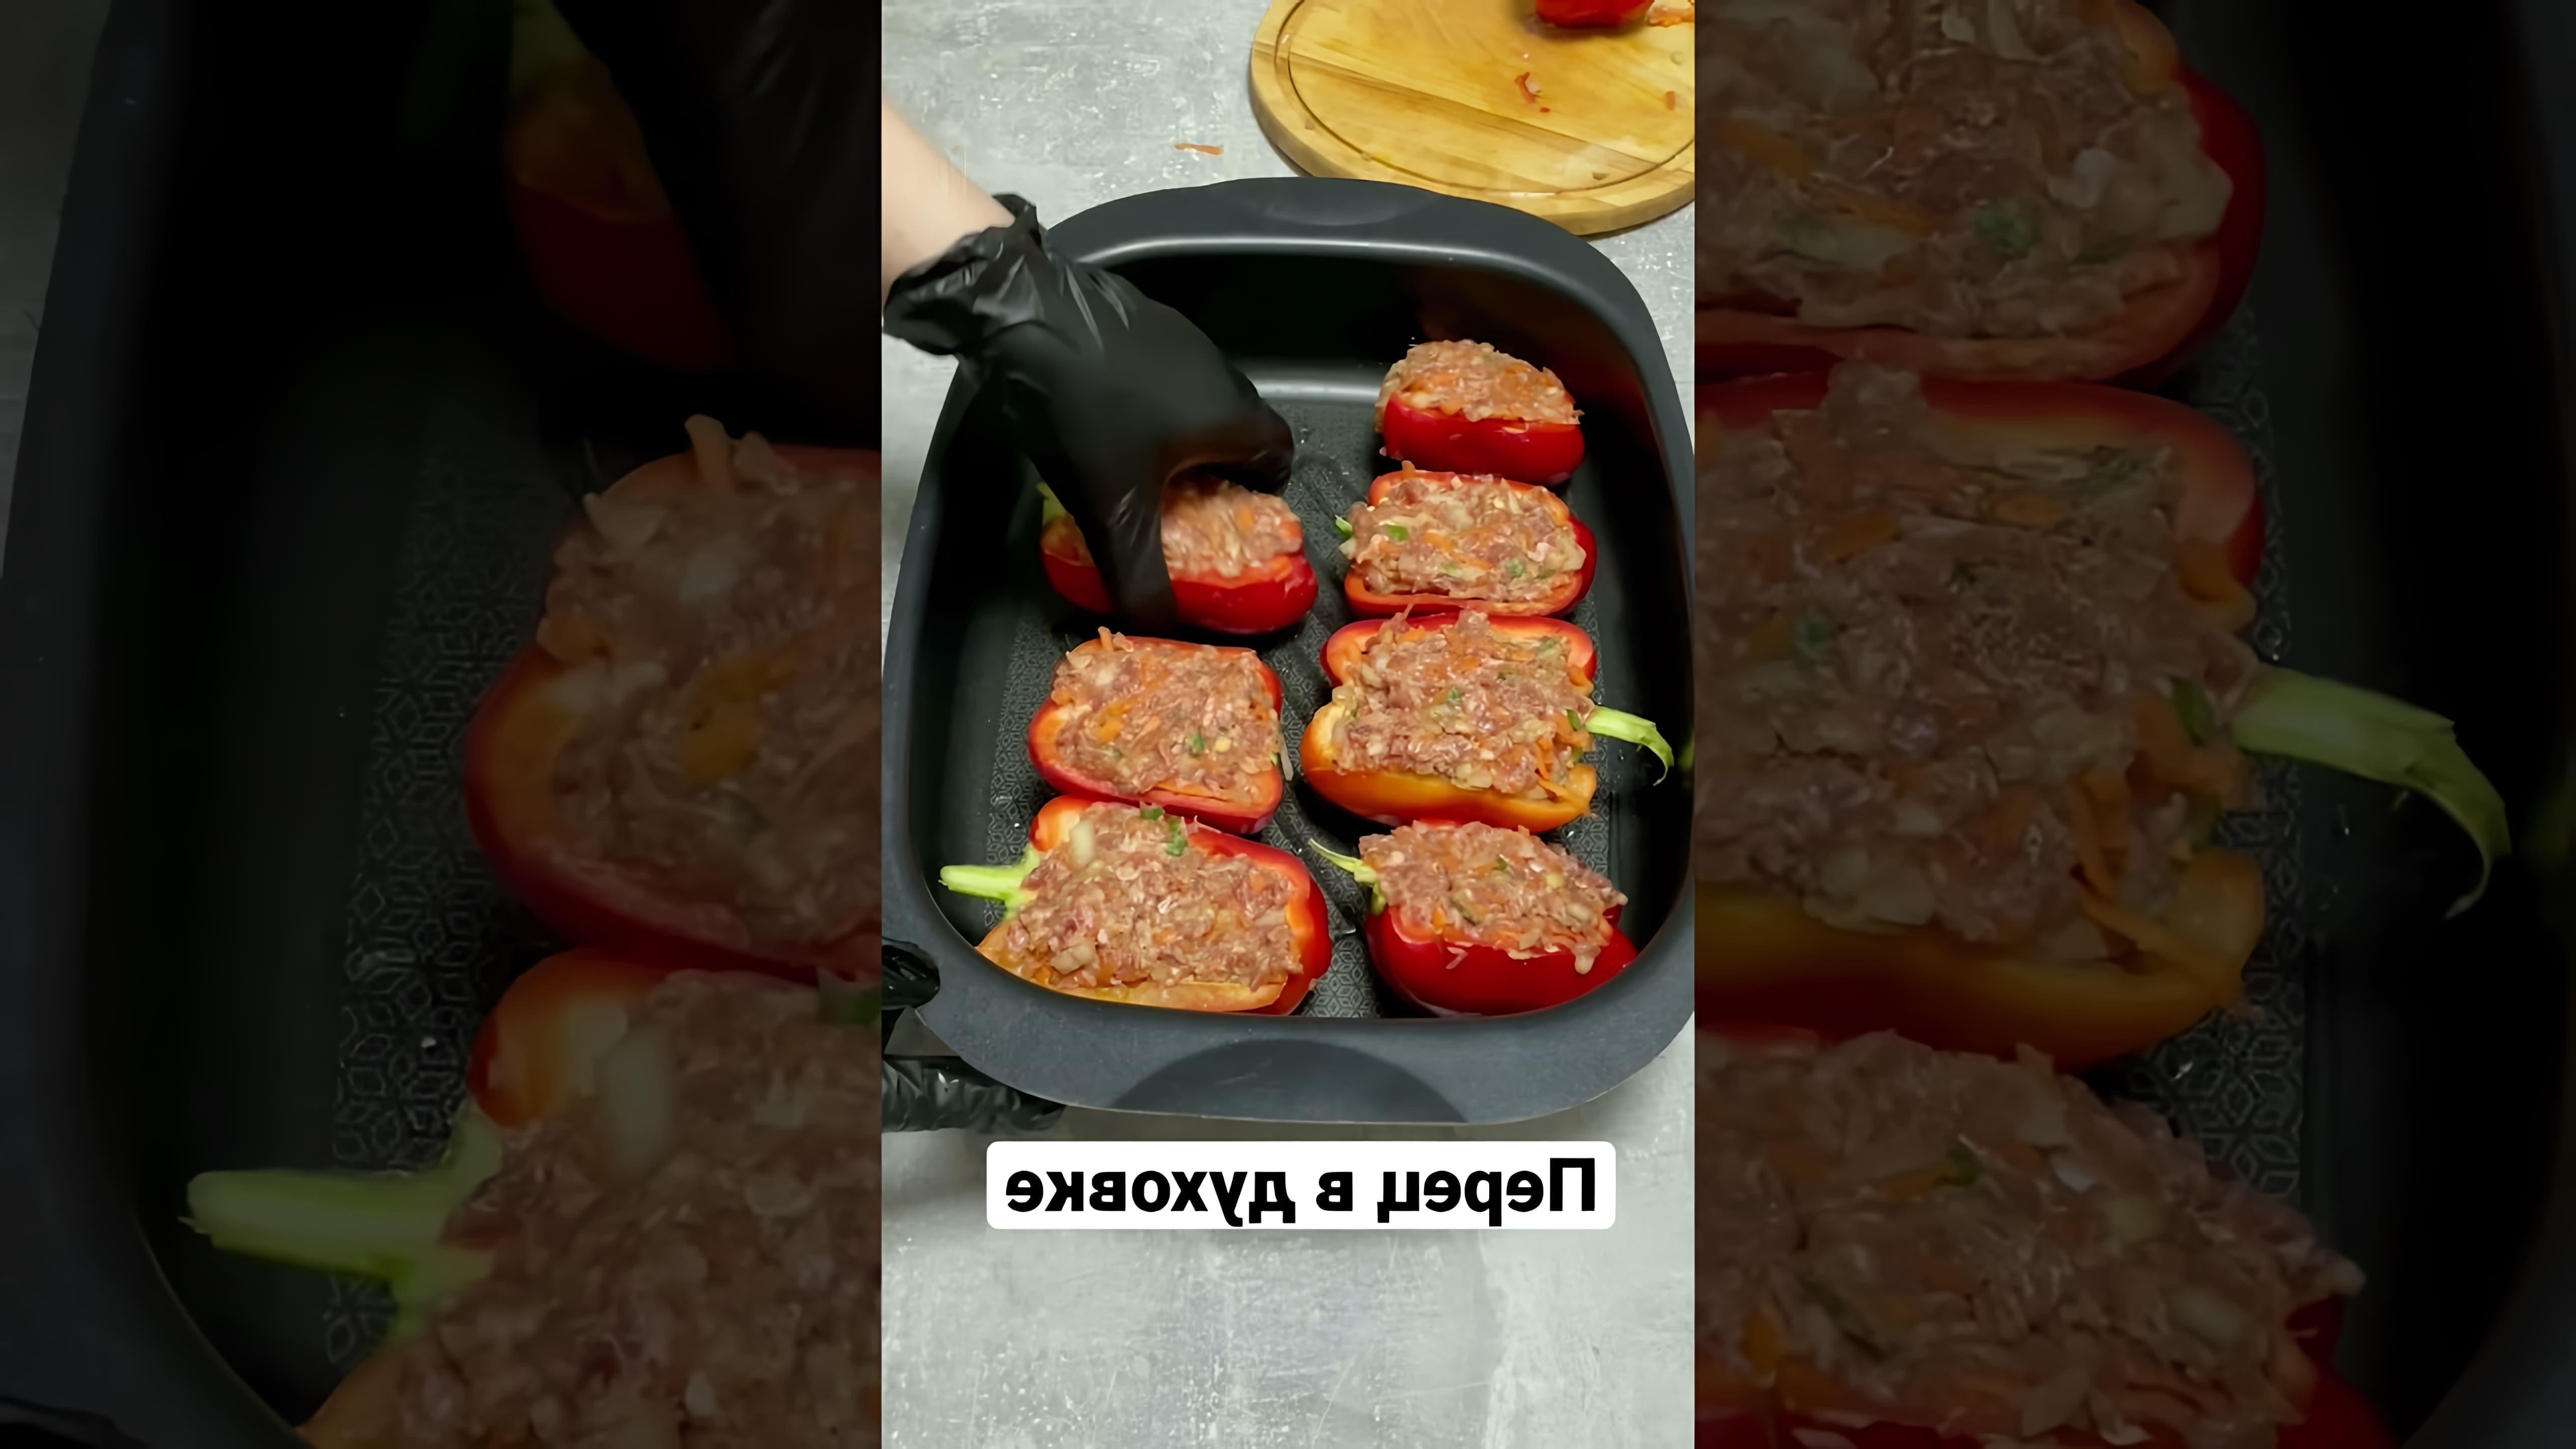 В этом видео-ролике будет показан простой и быстрый рецепт приготовления перца, фаршированного различными начинками